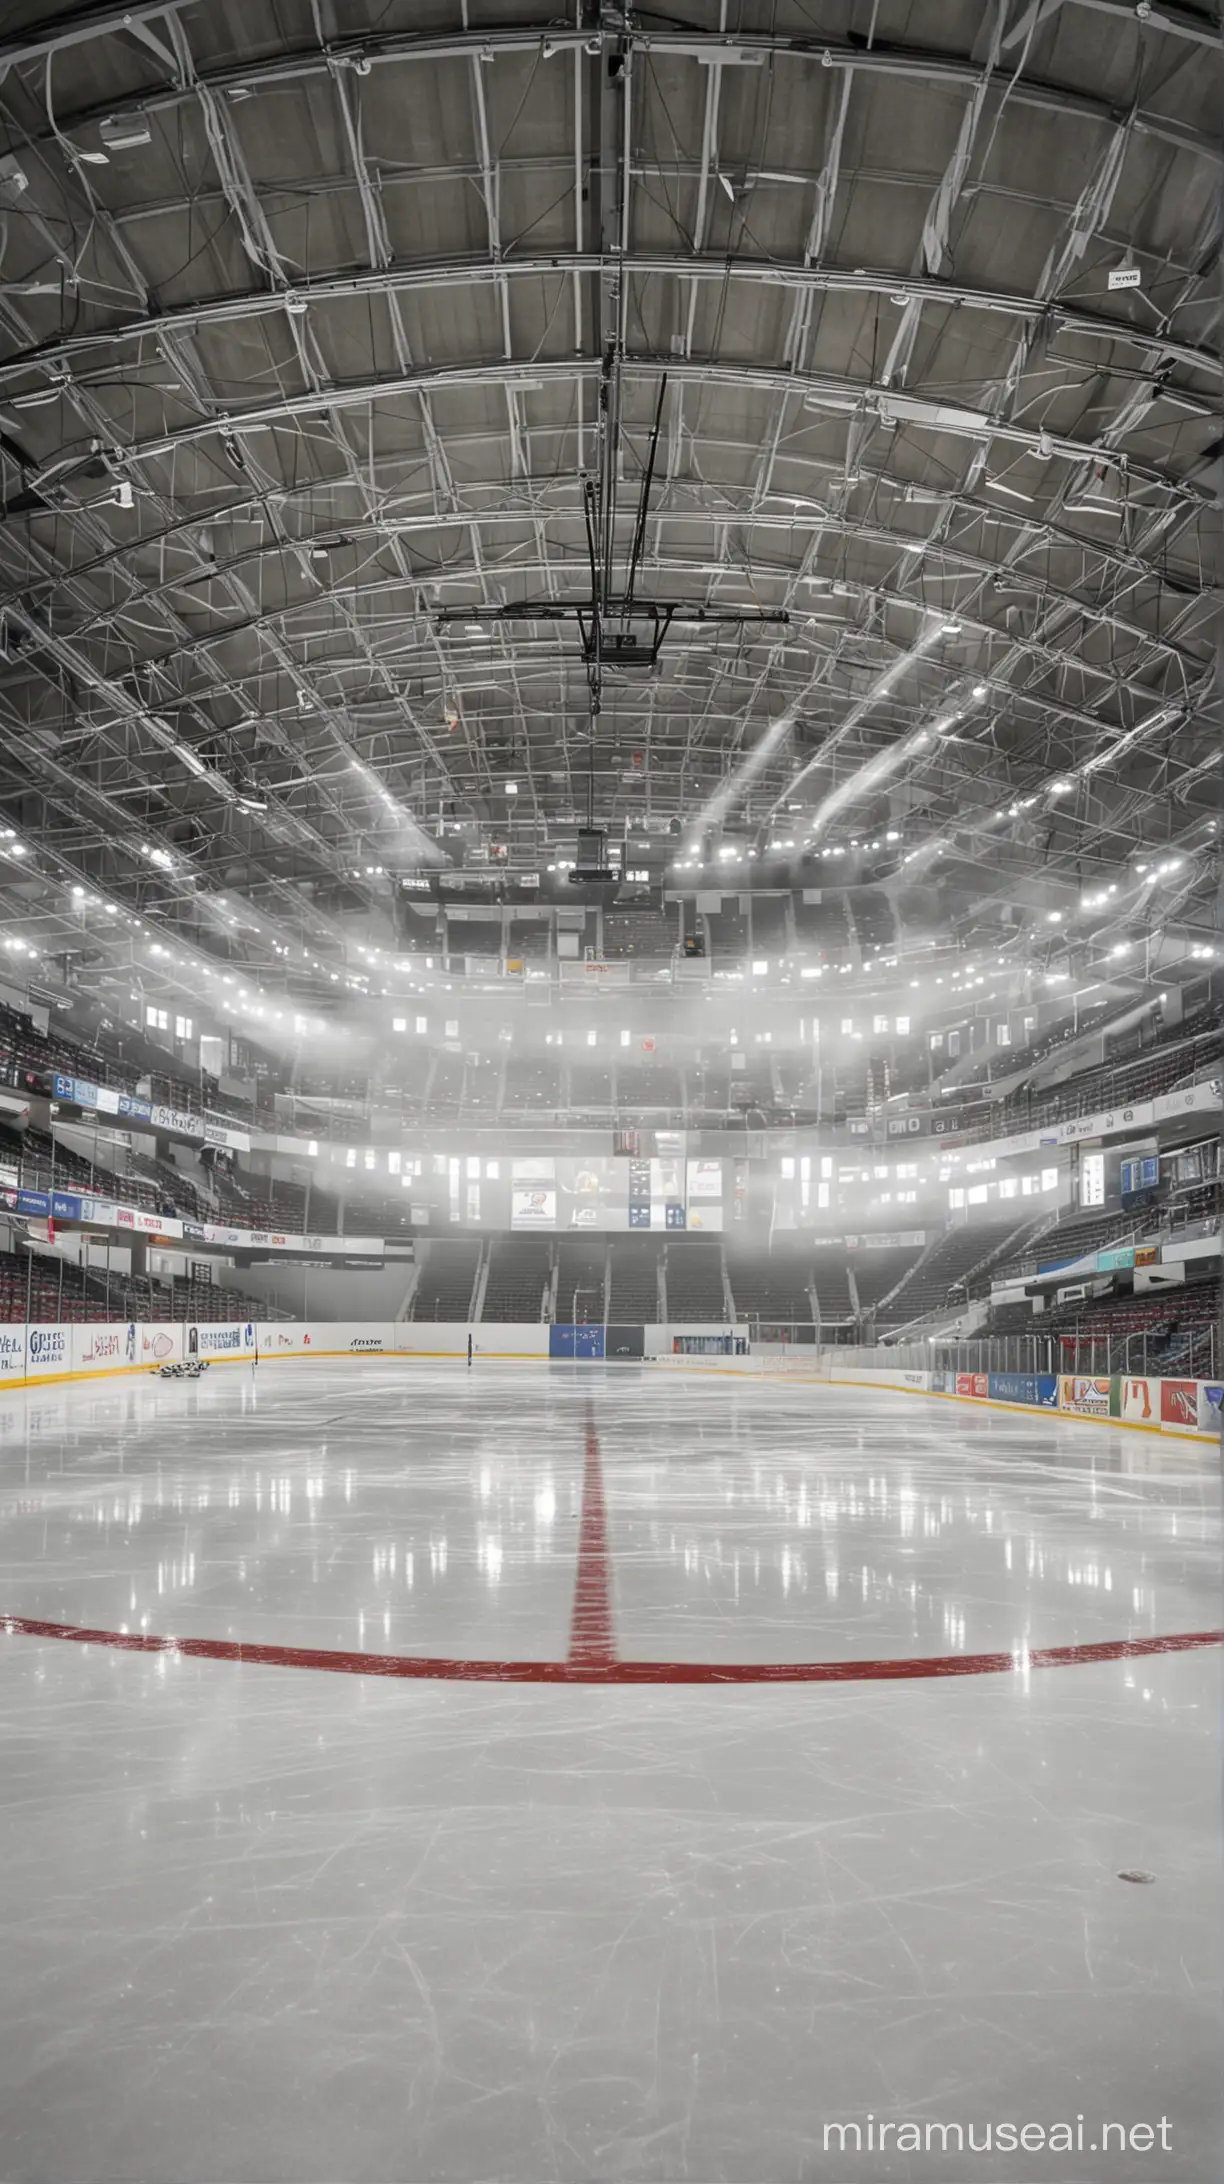 empty ice hockey arena